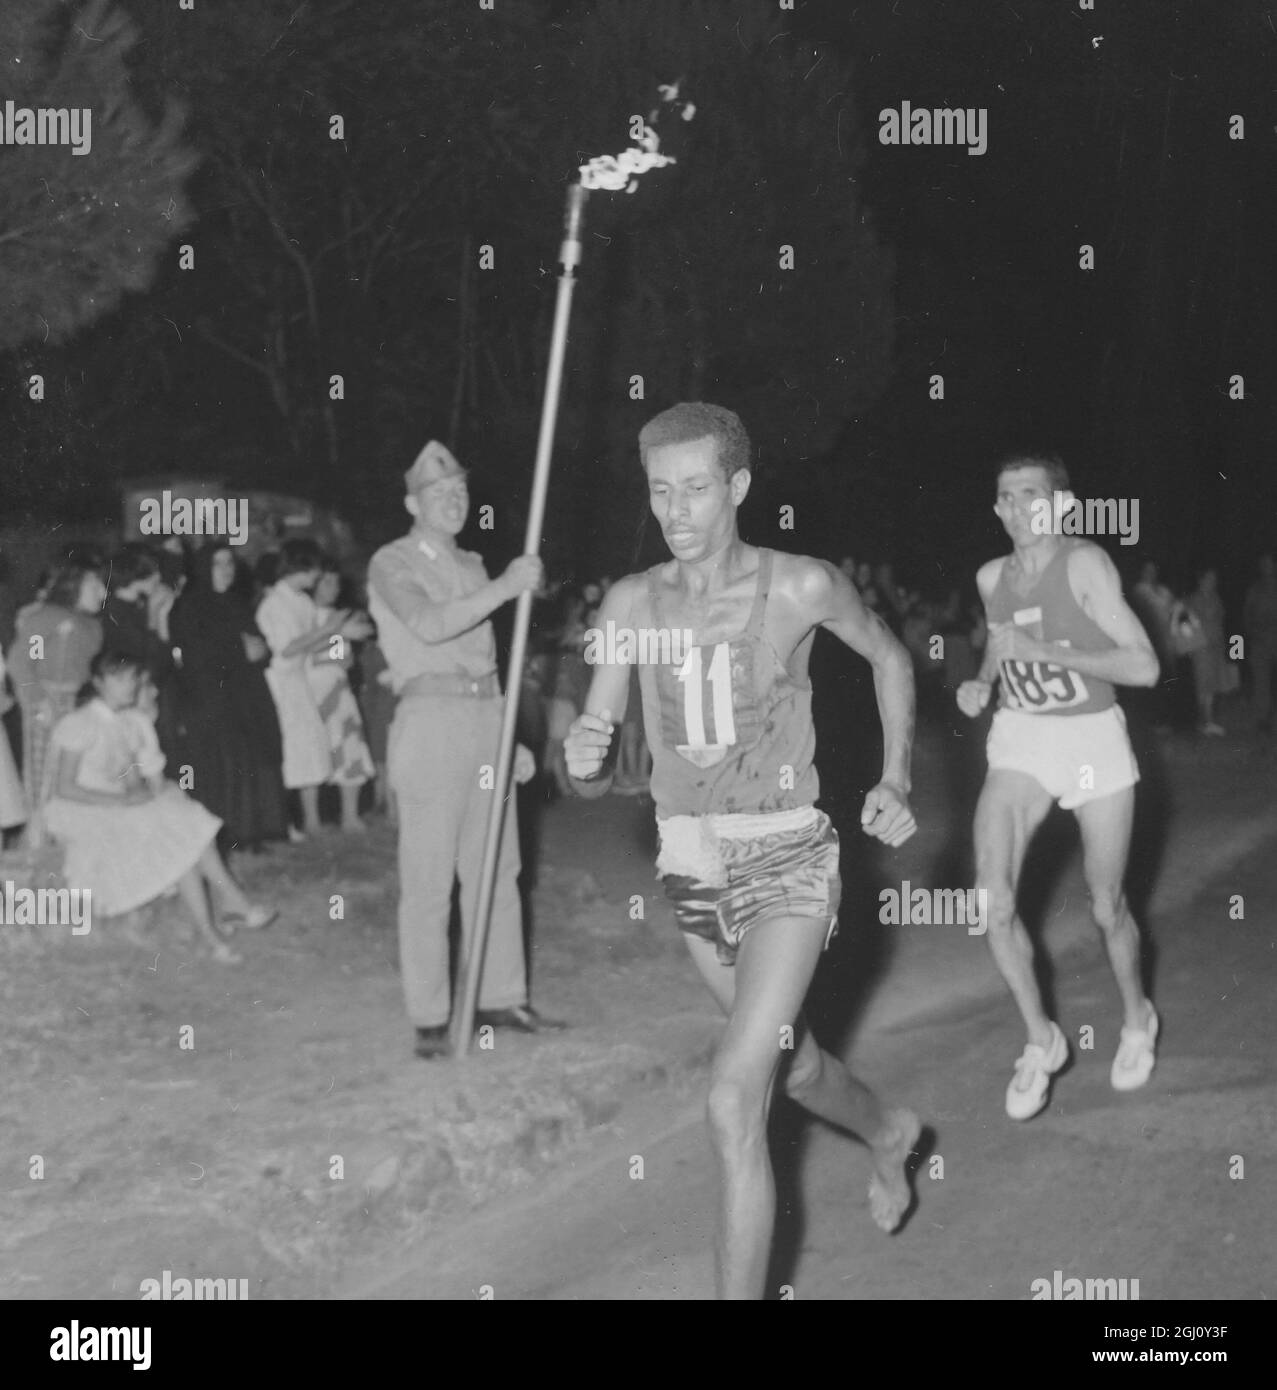 OLYMPIC GAME MARATHON ABEBE LEADS AT FINISH 11 SEPTEMBER 1960 Stock Photo